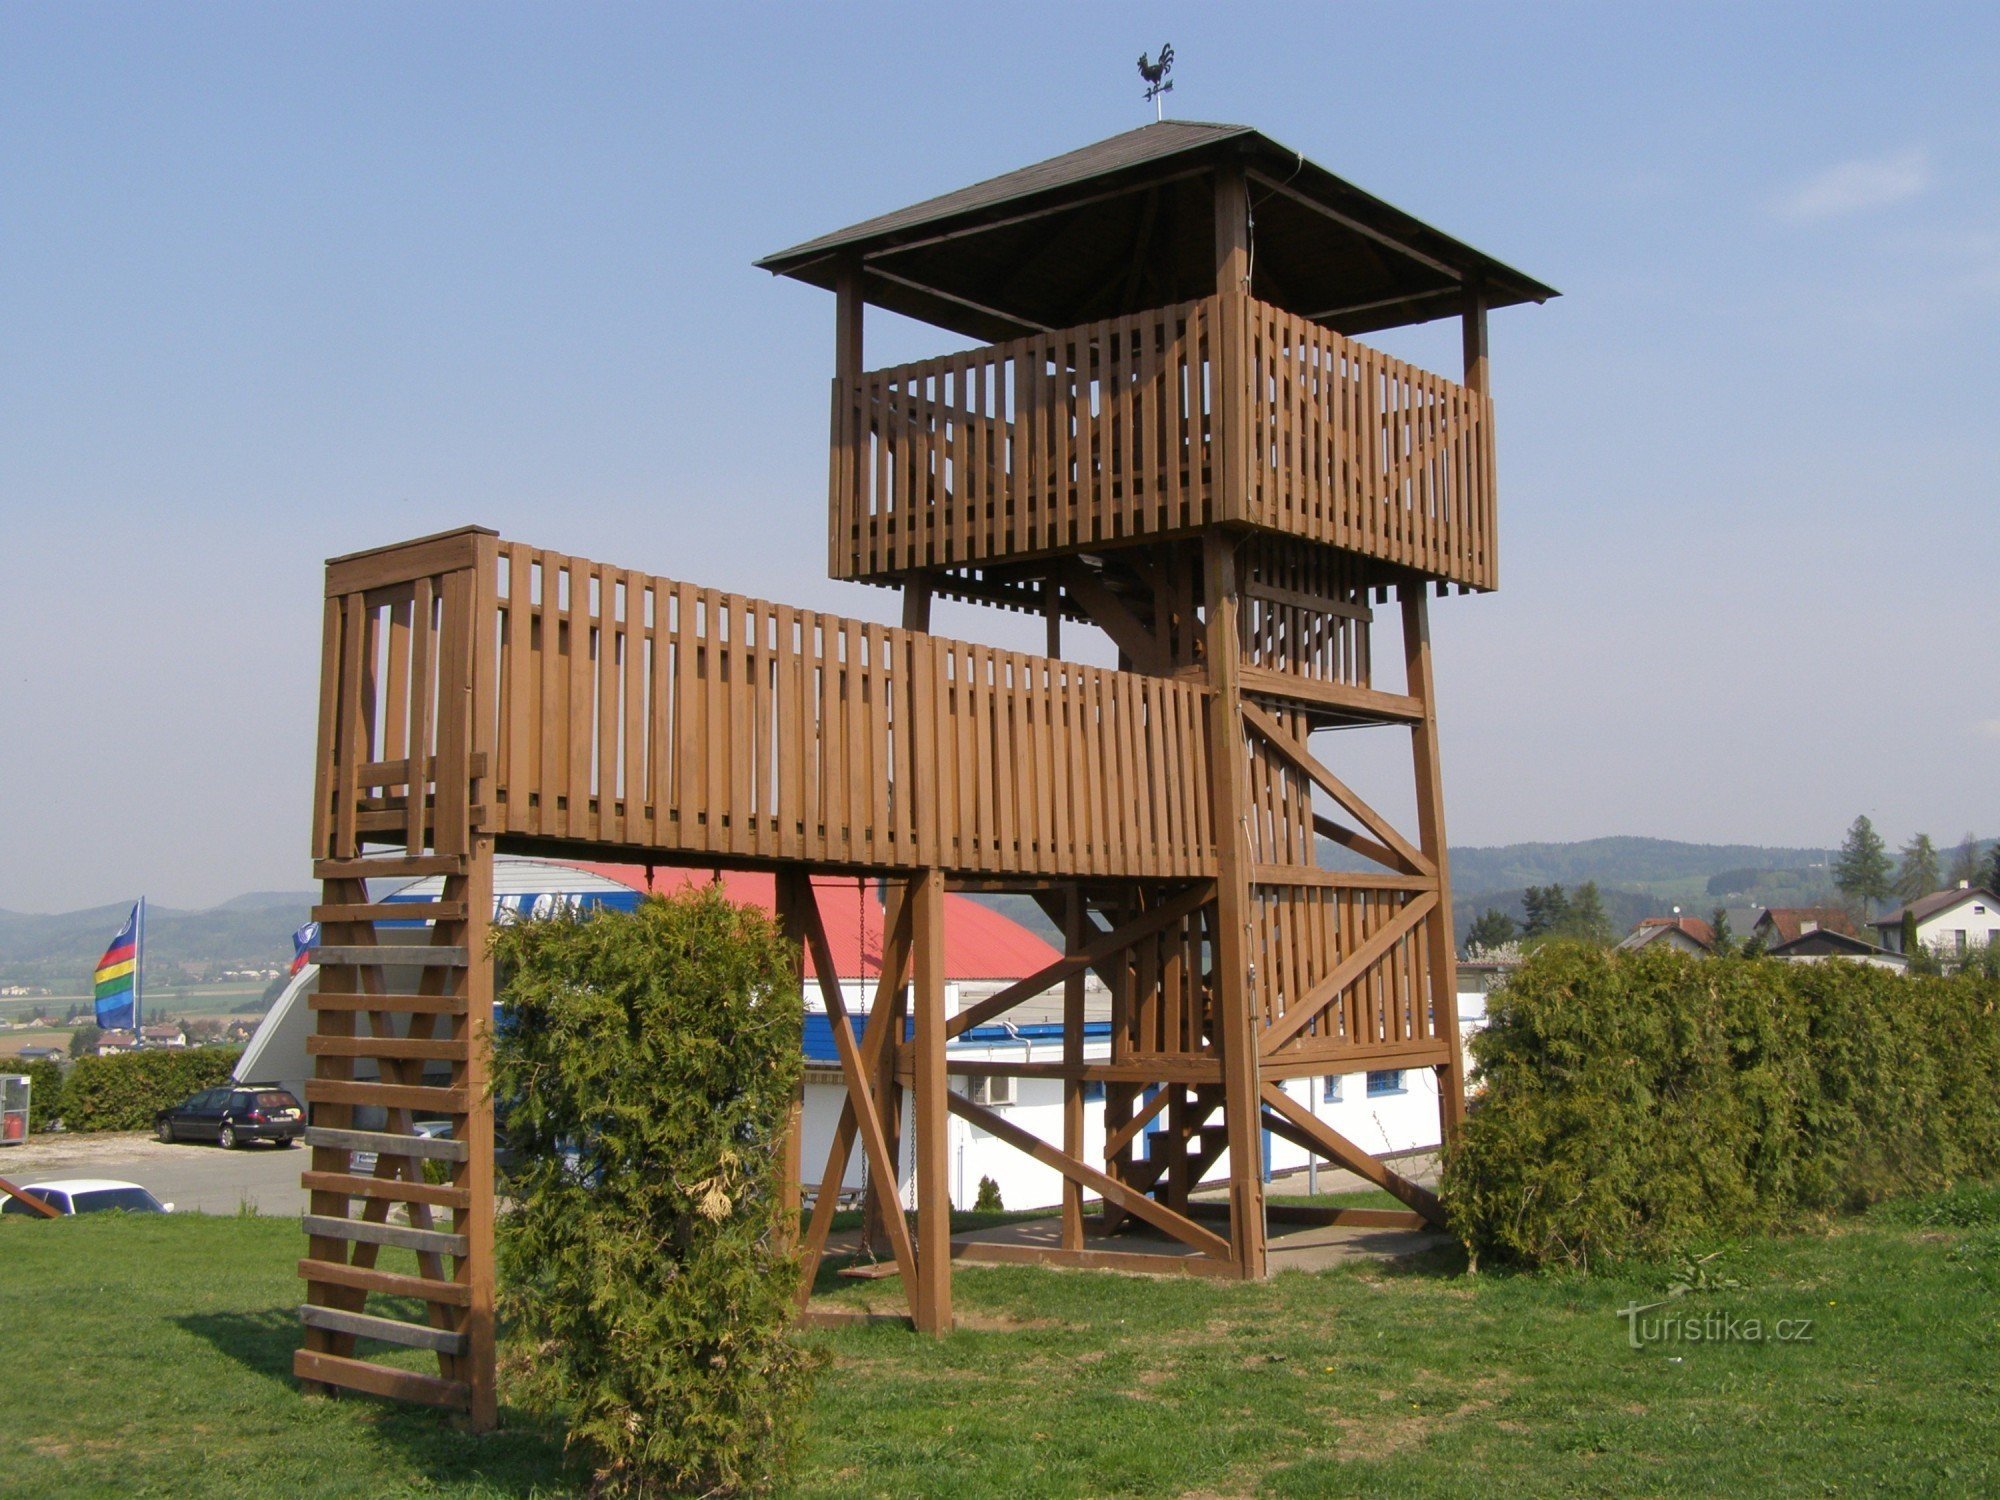 houten uitkijktoren bij Rtyn in Podkrkonoší